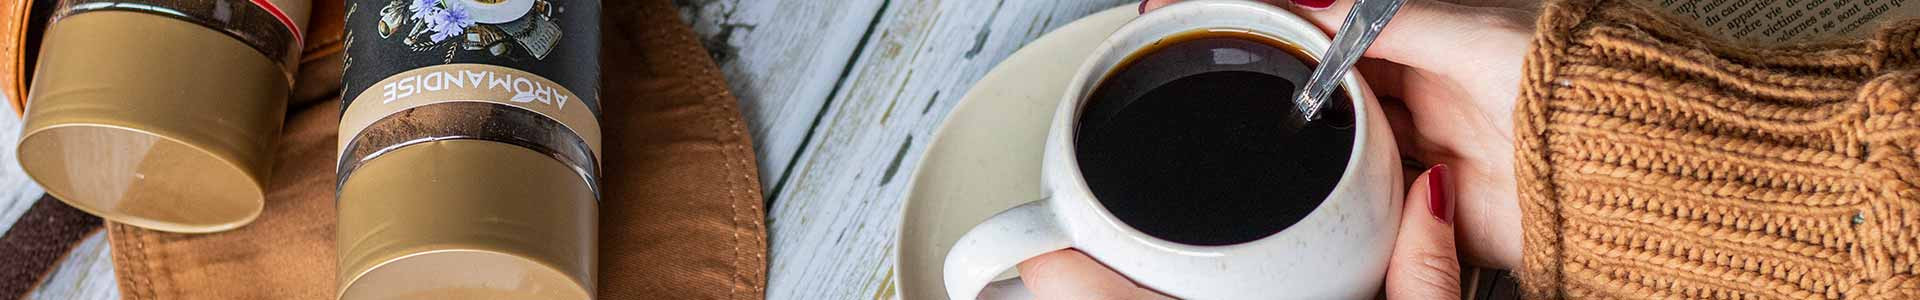 Substituts de café bio, pour réduire la caféine - Aromandise